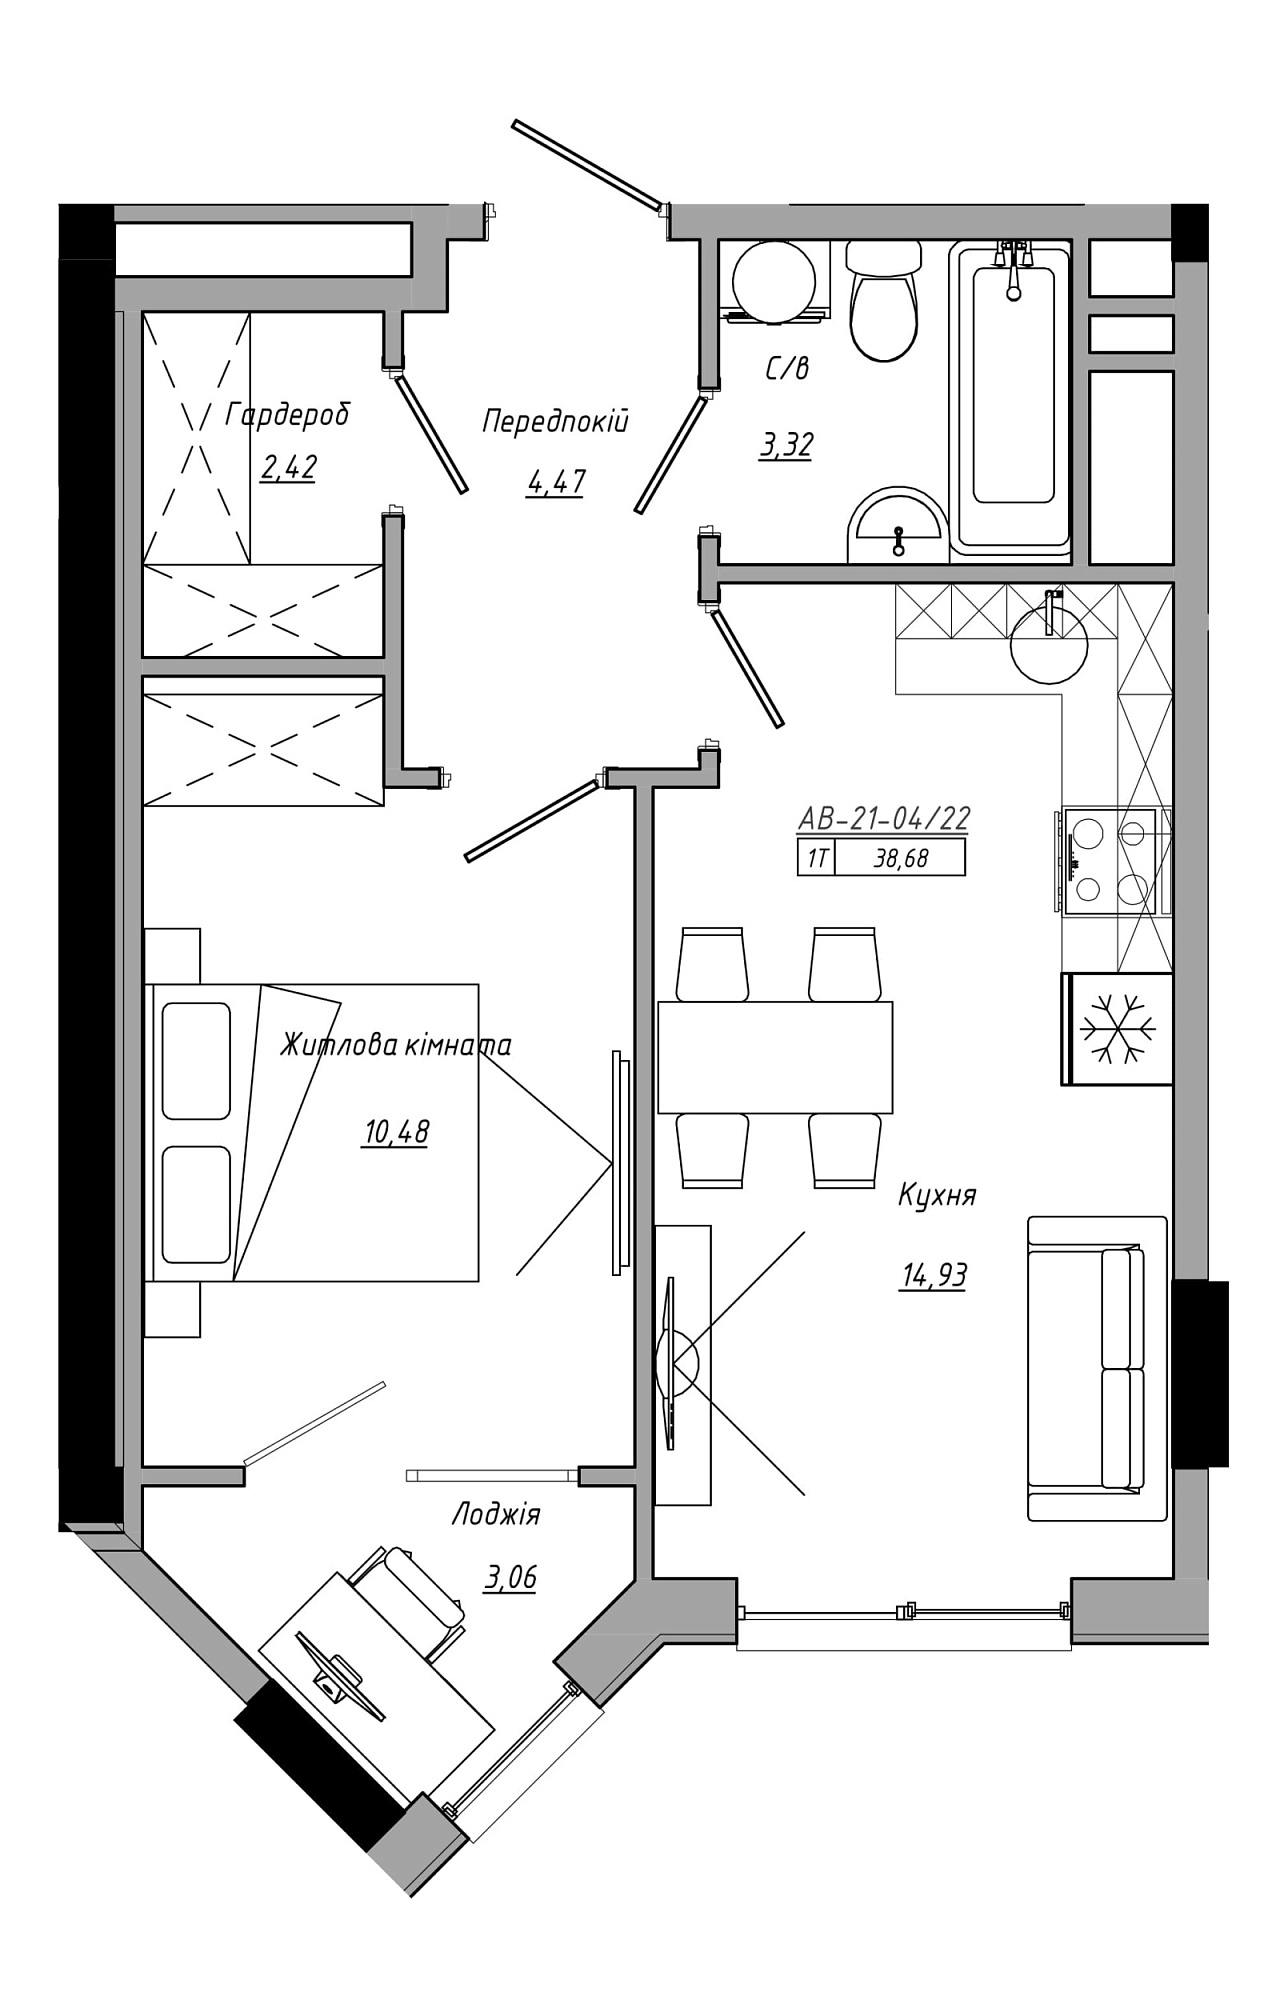 Планування 1-к квартира площею 38.68м2, AB-21-04/00022.